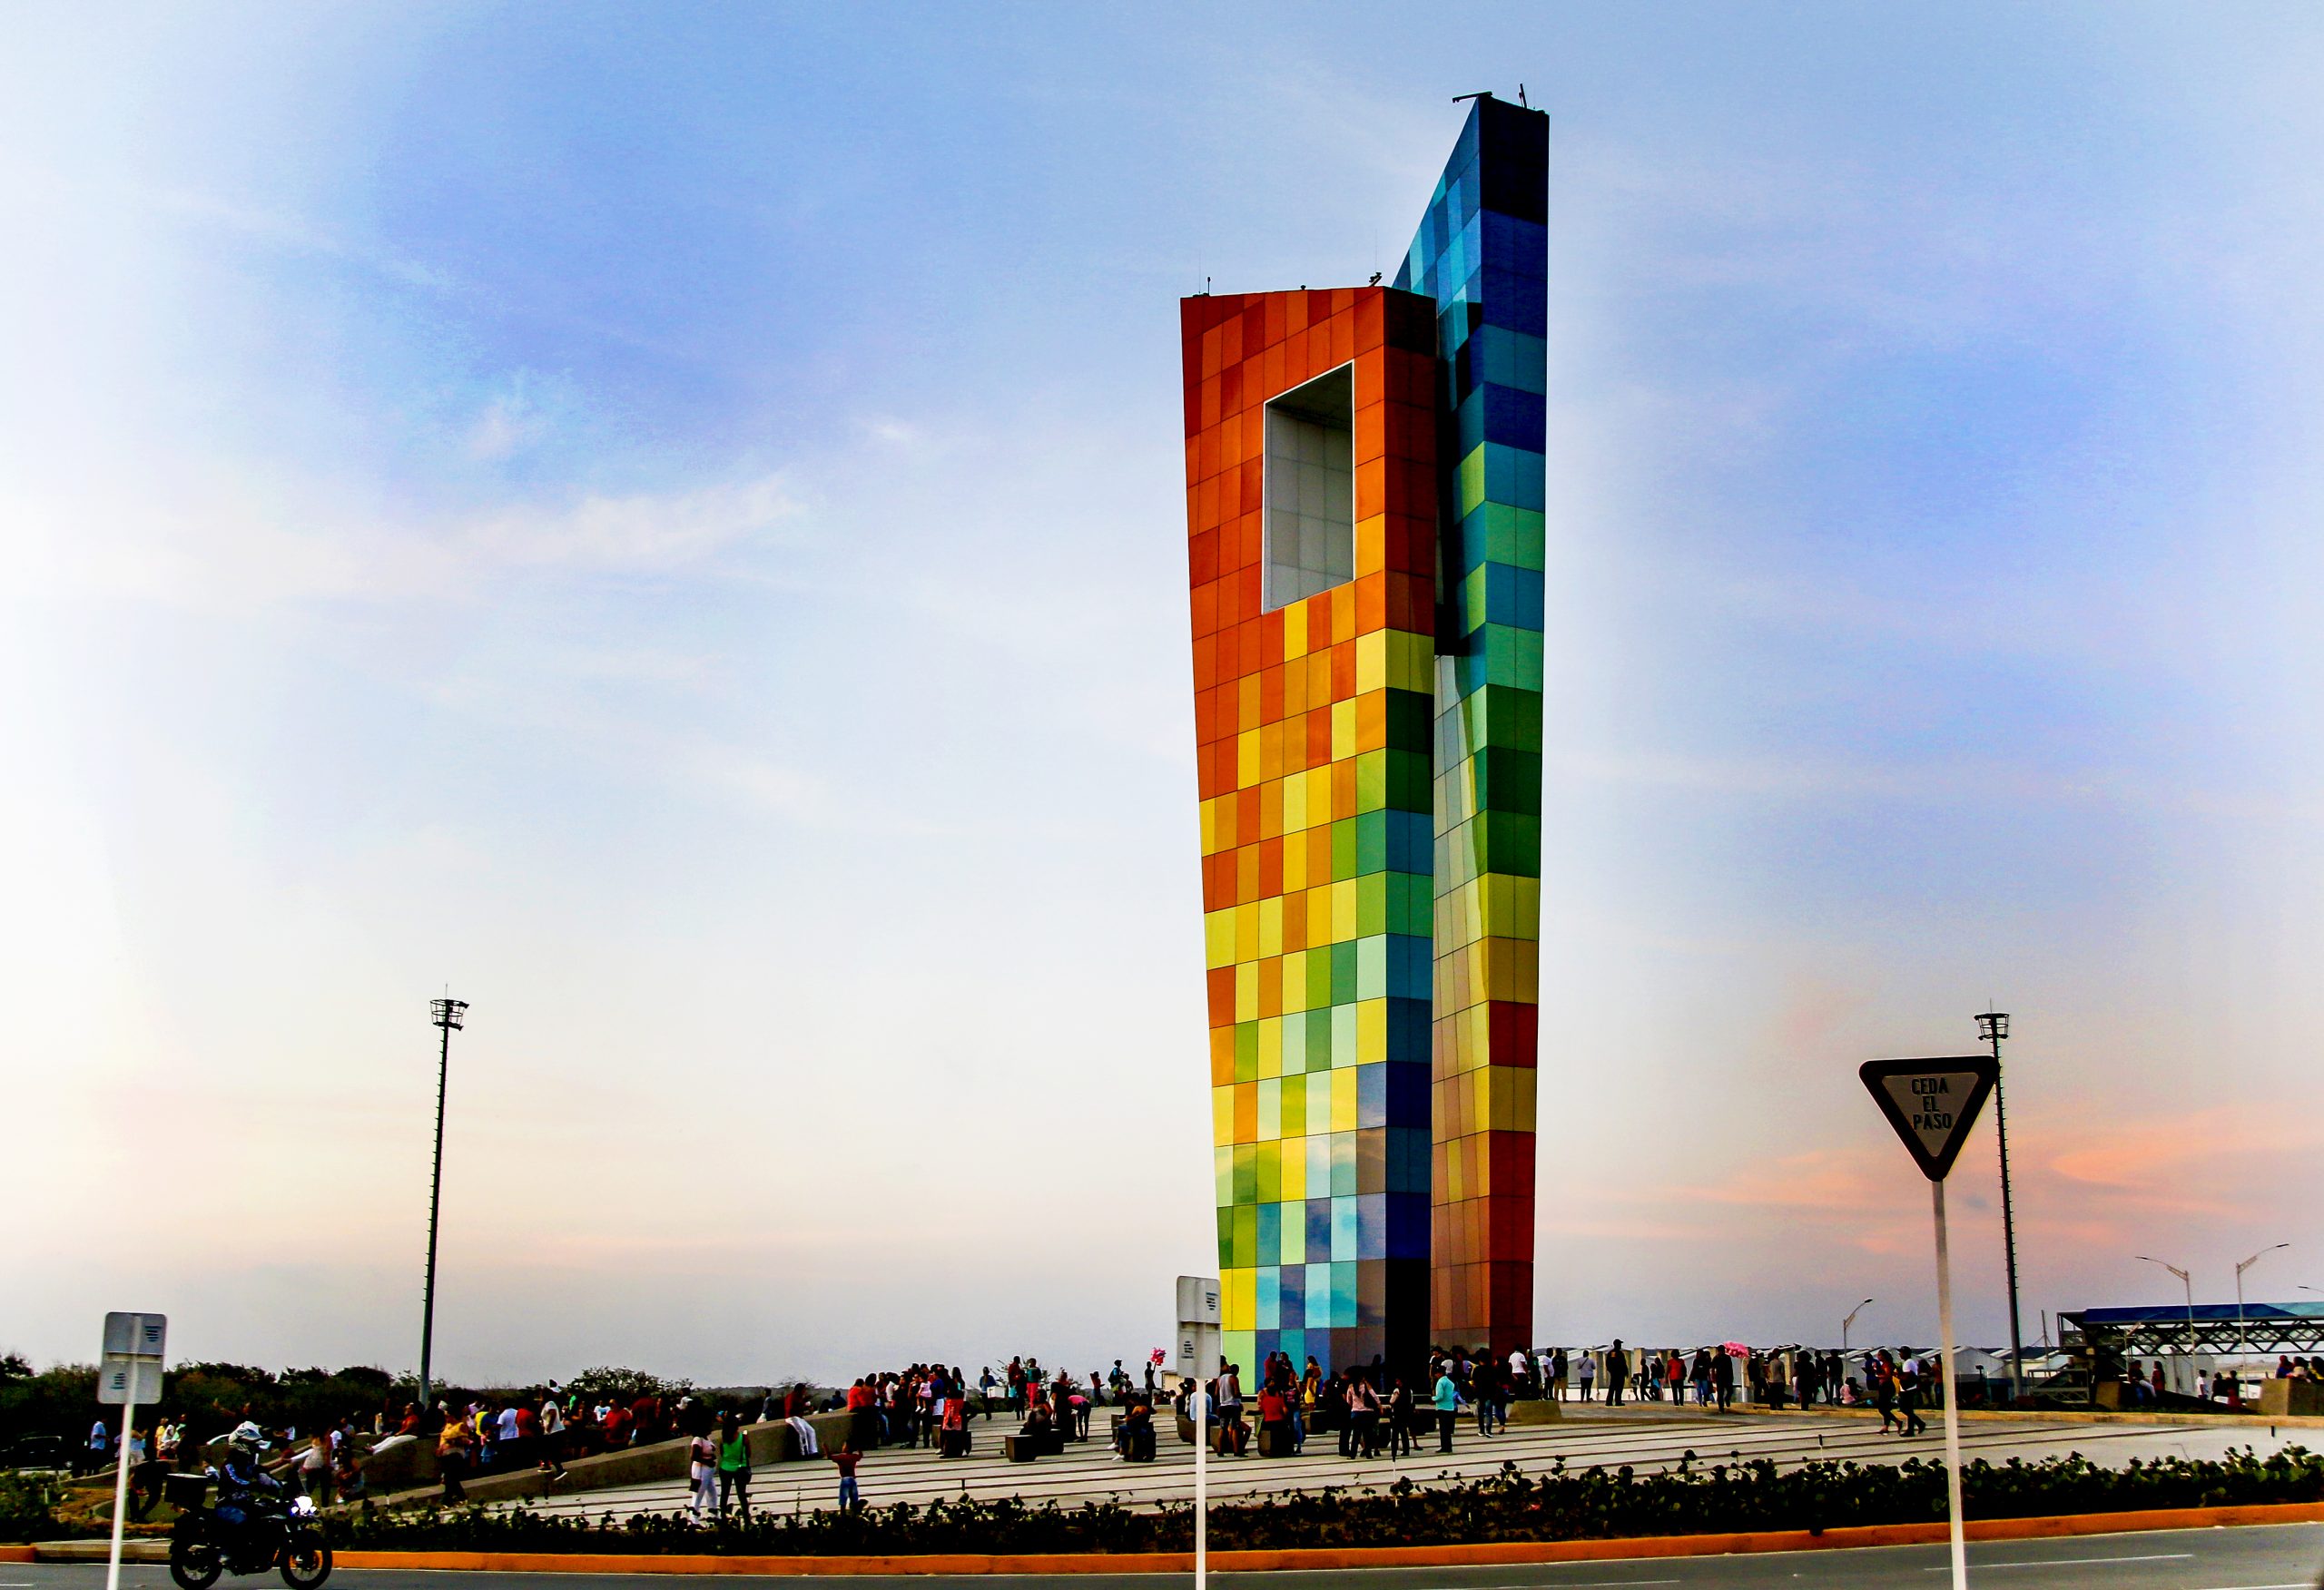 La Ventana al mundo es un monumento público ubicado en Barranquilla. Fue construido a finales de 2018 para coincidir con los XXIII Juegos Centroamericanos y del Caribe de los cuales la ciudad fue anfitriona. (Foto: Oscar Berrocal)